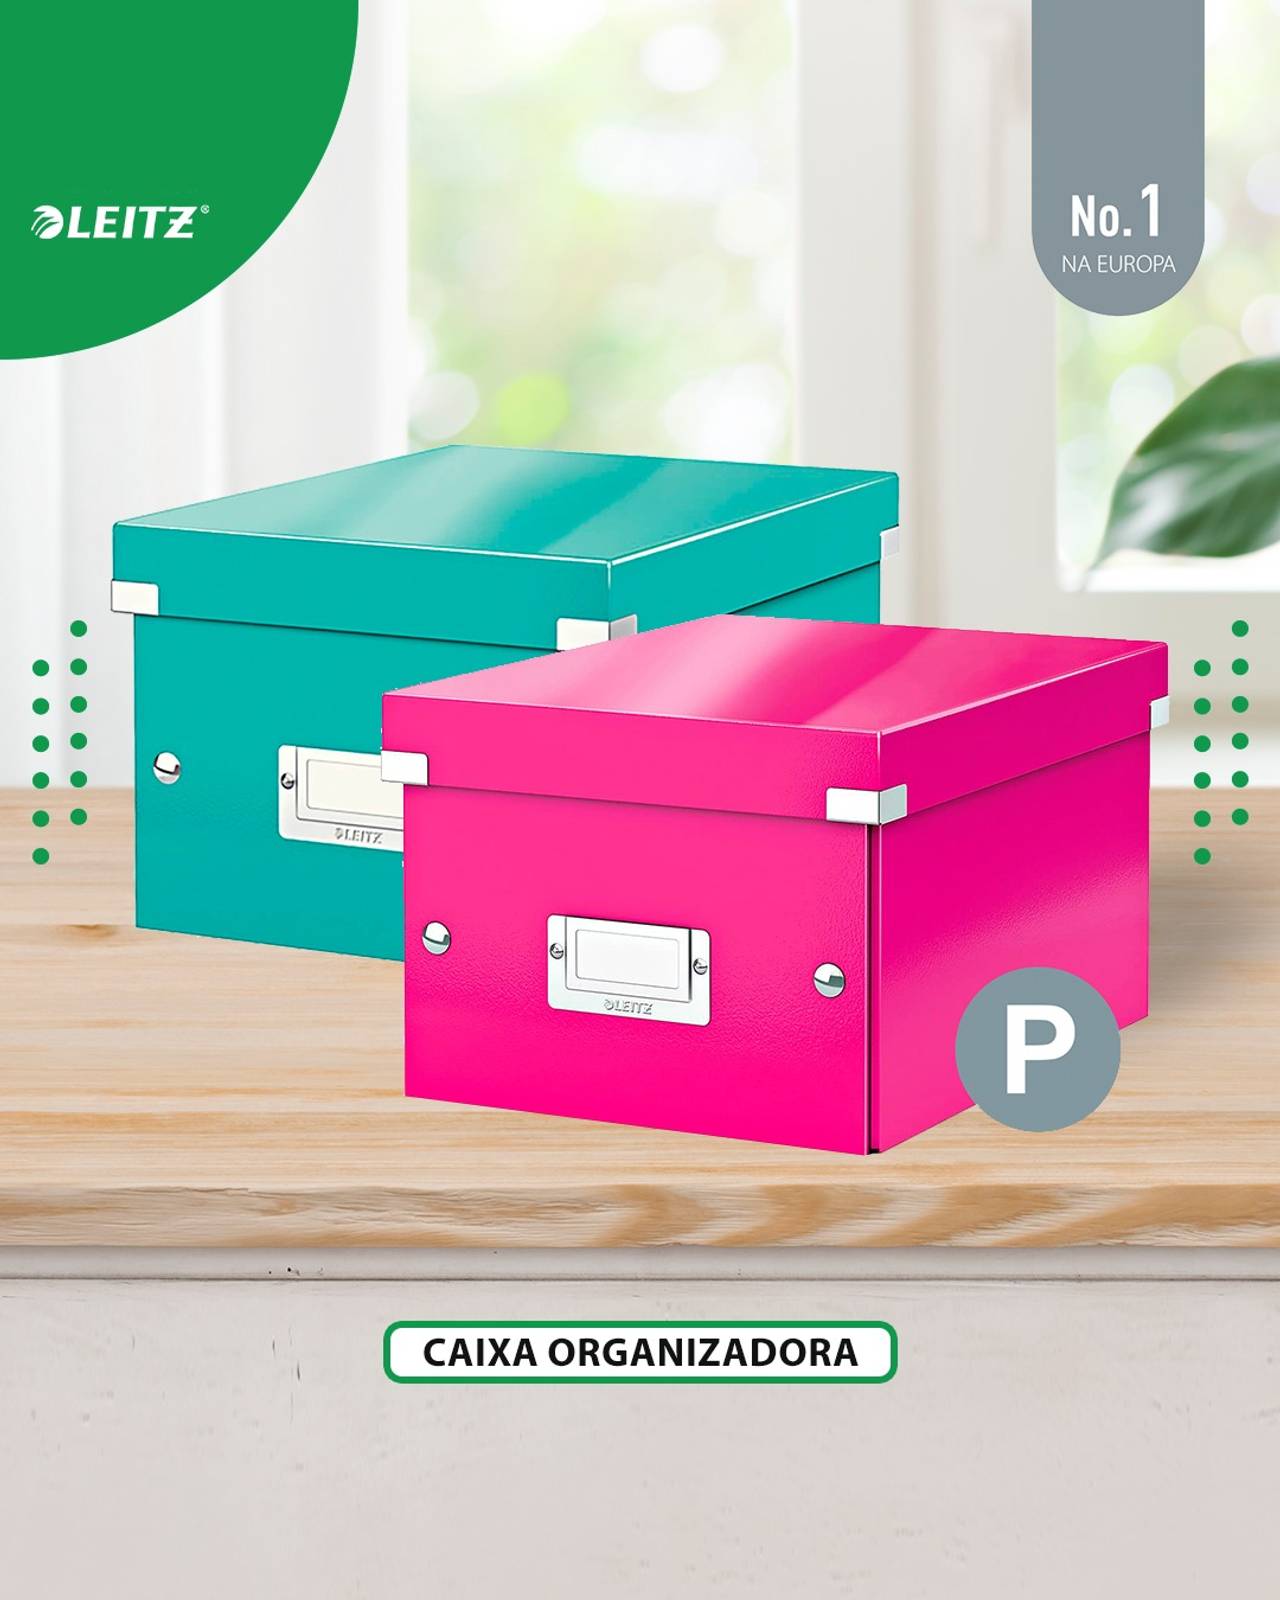 Caixas organizadoras da linha Leitz, sendo uma verde-água e uma cor-de-rosa